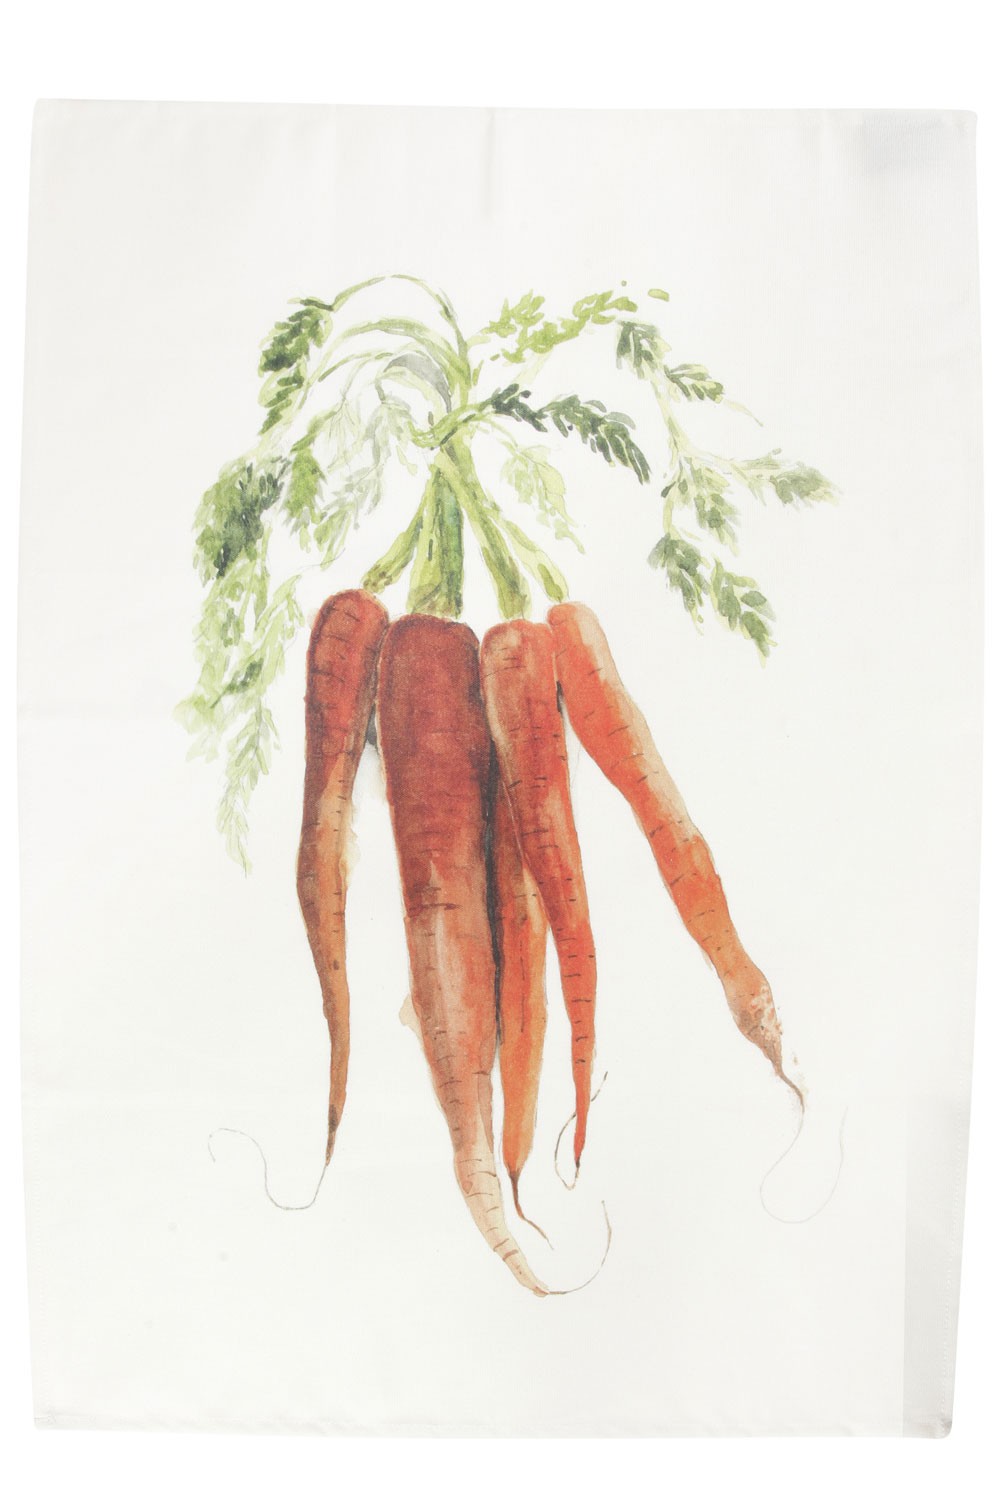 Saveurs -  Torchon Legume du jardin carottes  70x50cm 